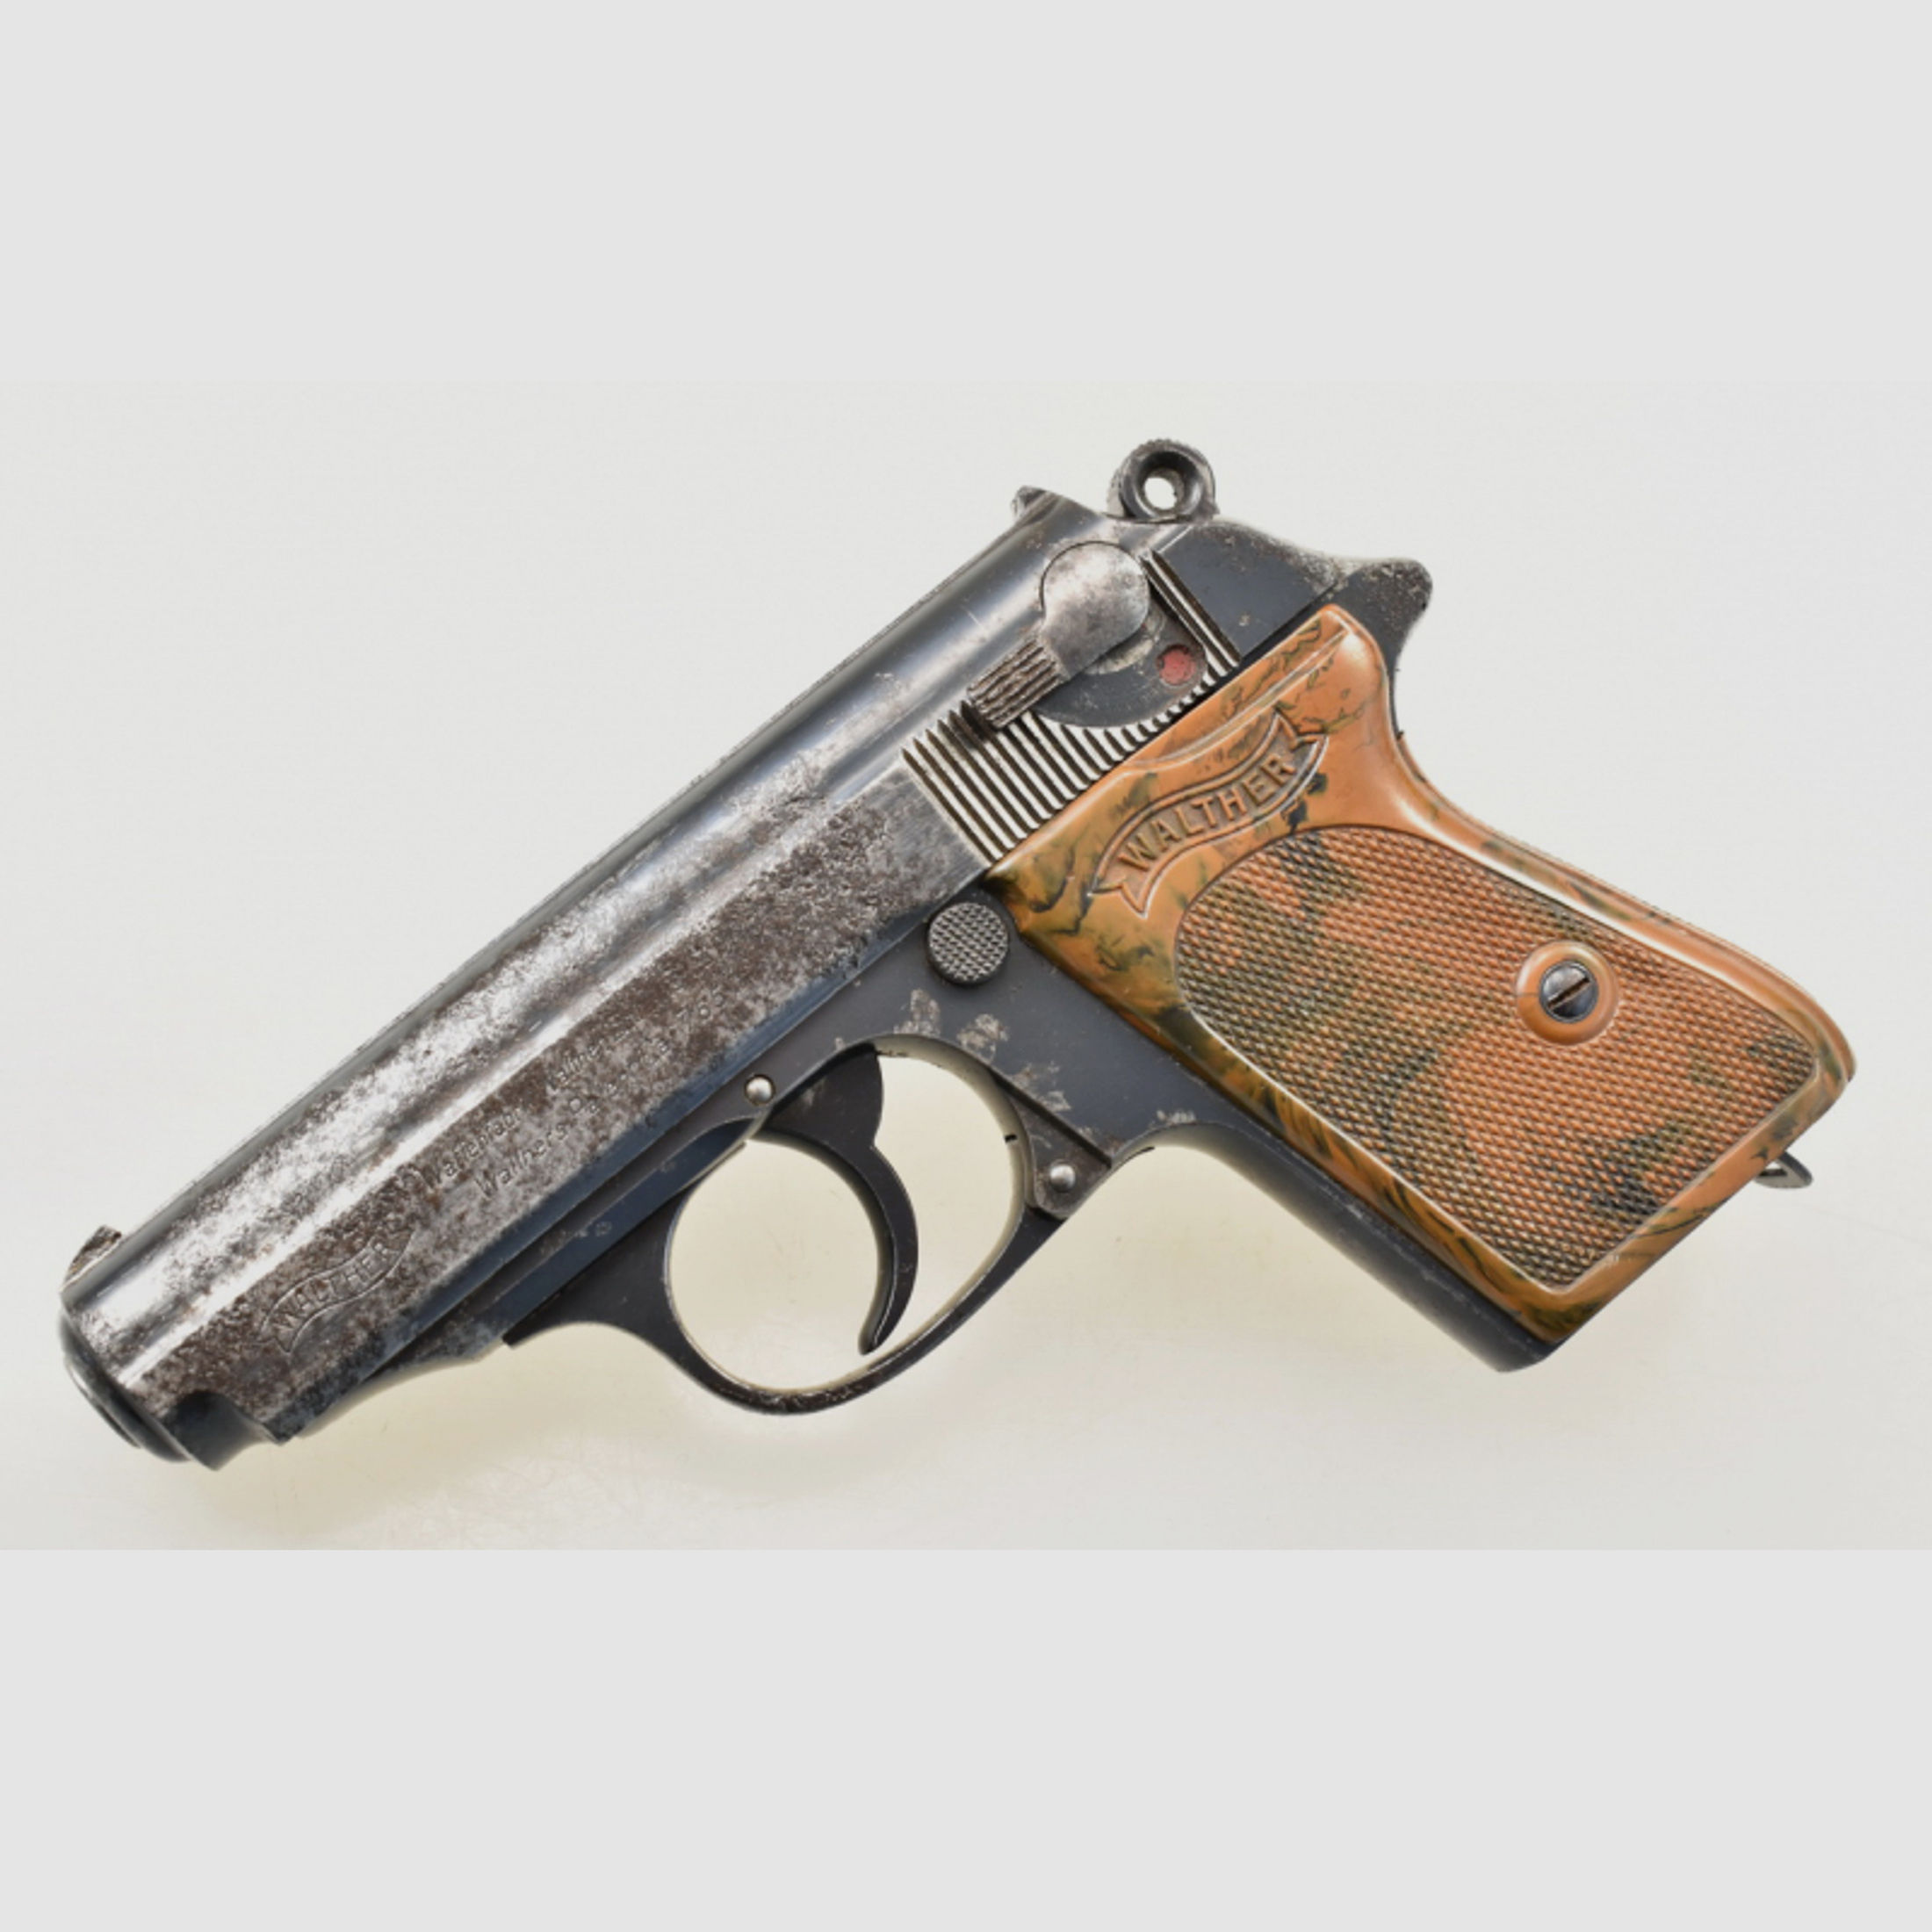 WALTHER / Zella Mehlis Pistole Modell PPK Bj. 1935 im Kal. 7,65mm Br. mit 90° Sicherung